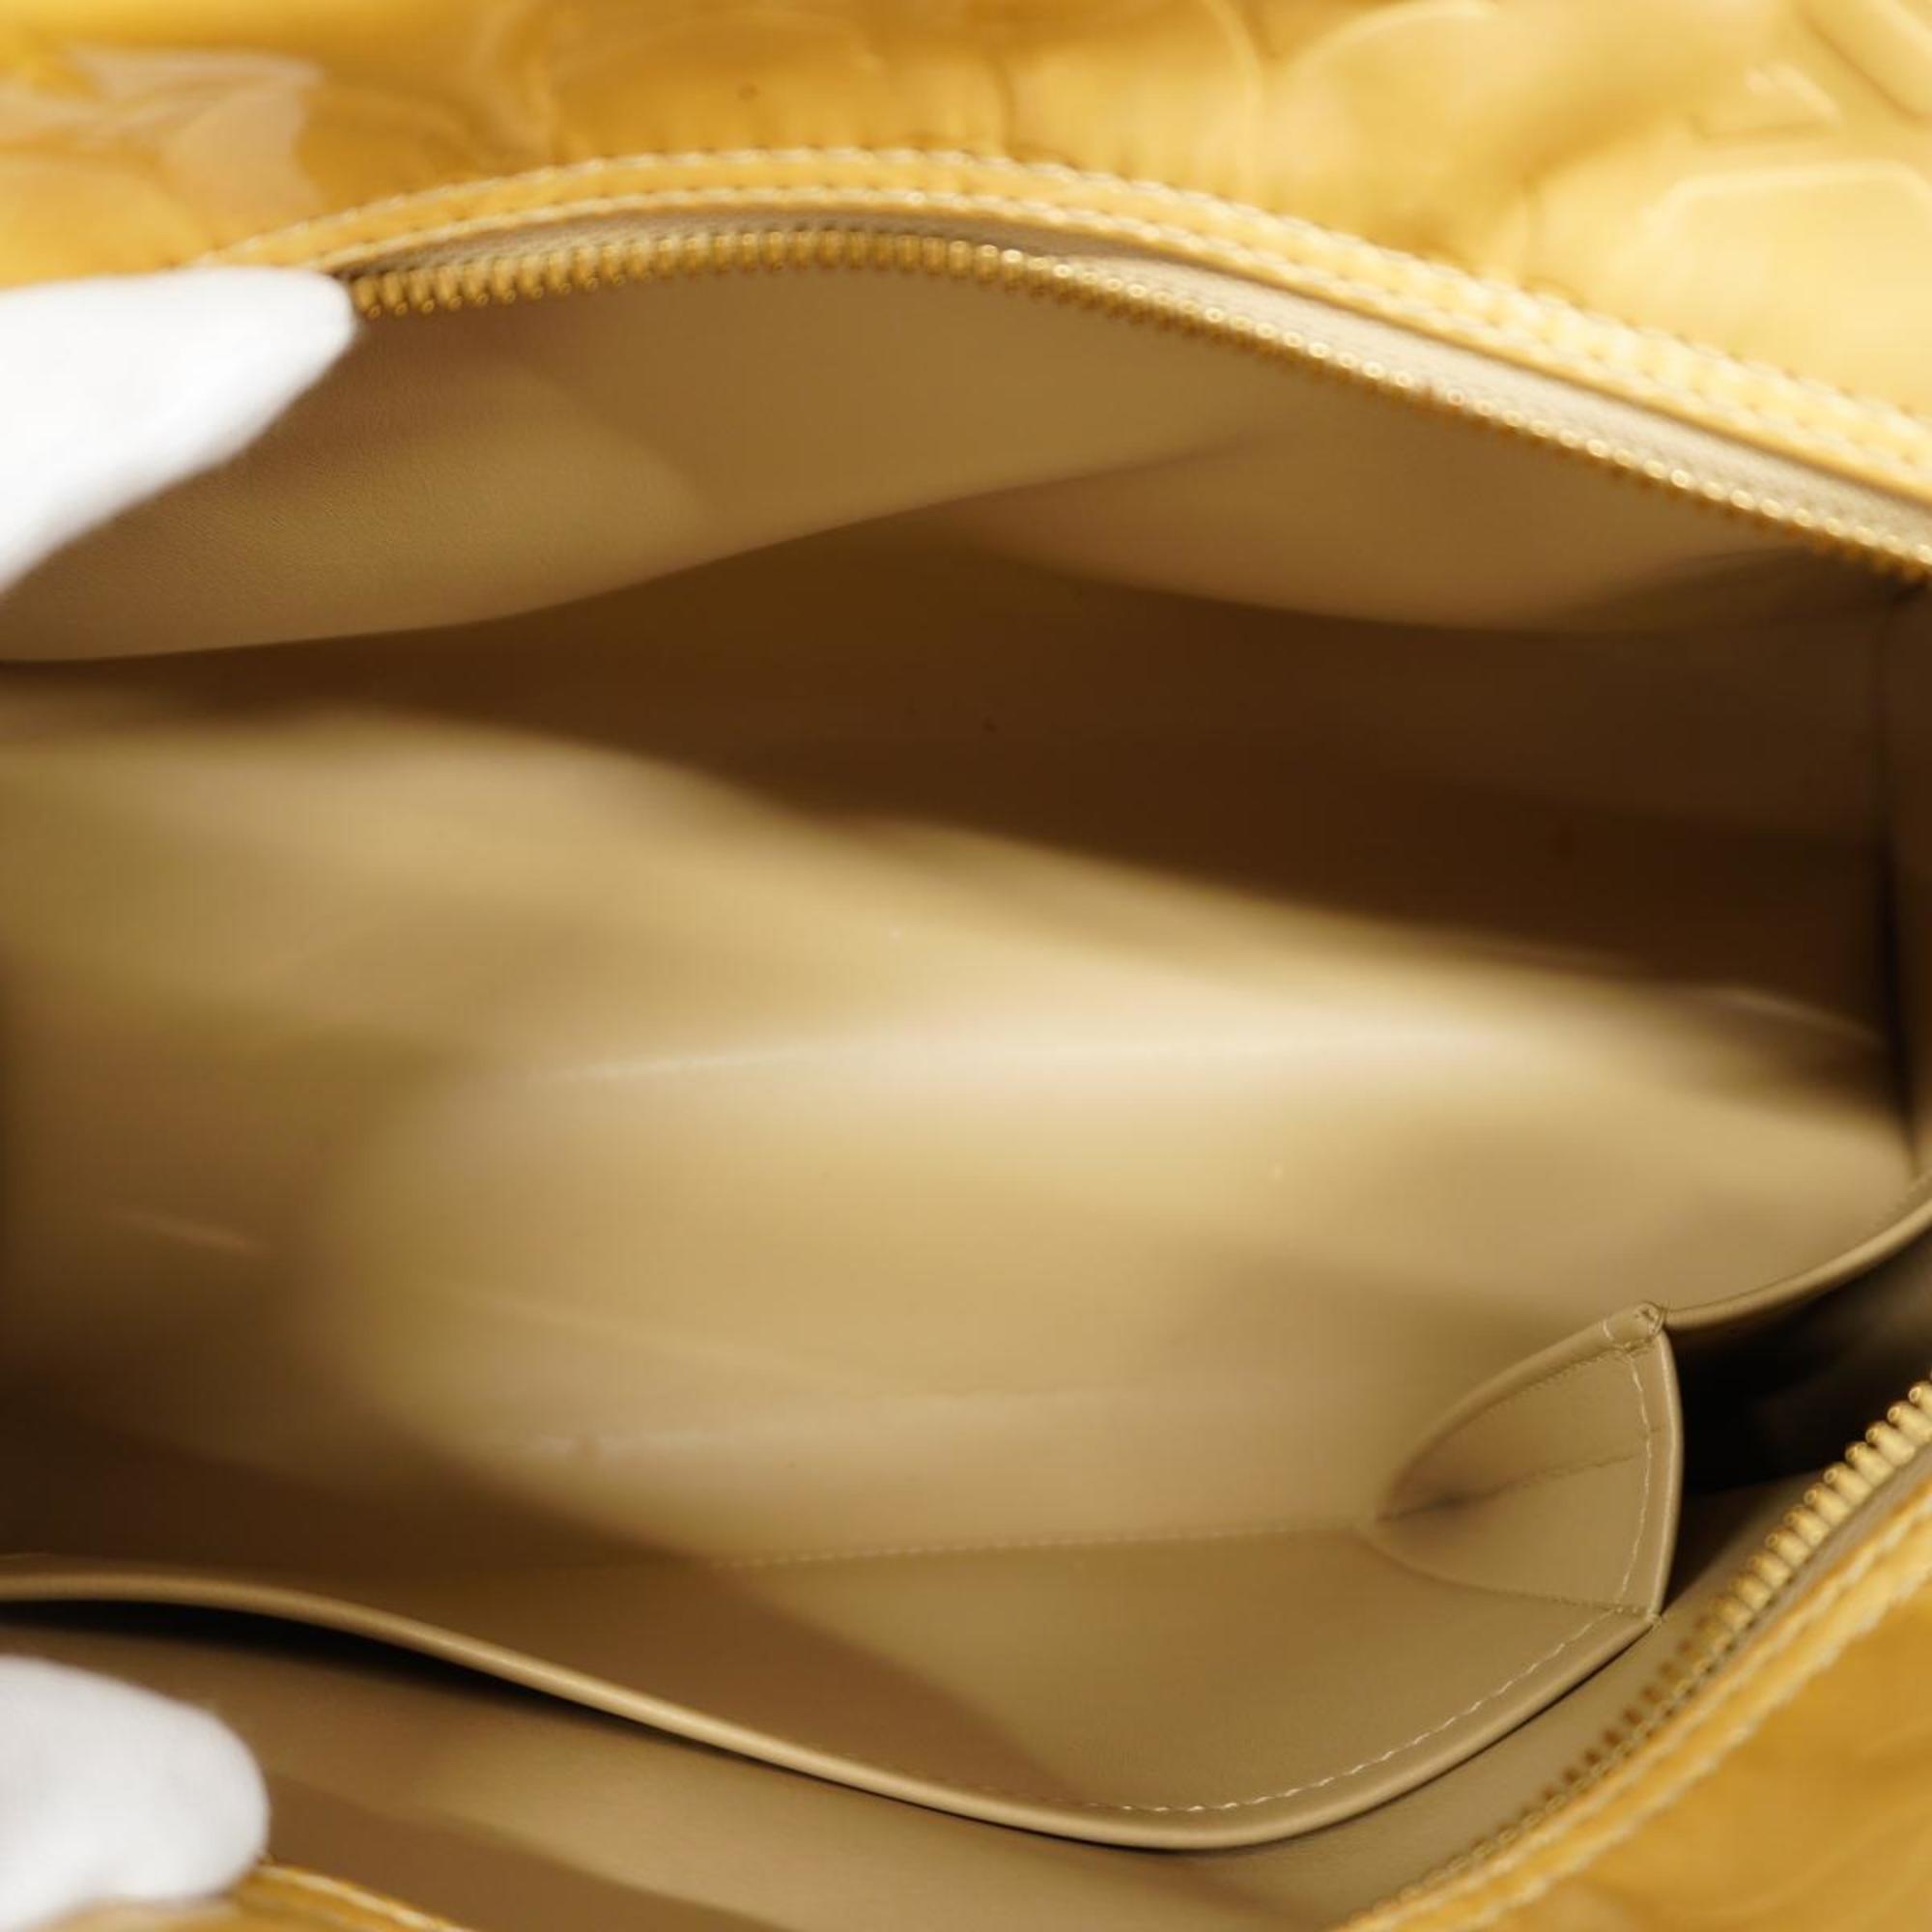 Louis Vuitton Handbag Vernis Tompkins Square M91149 Beige Women's